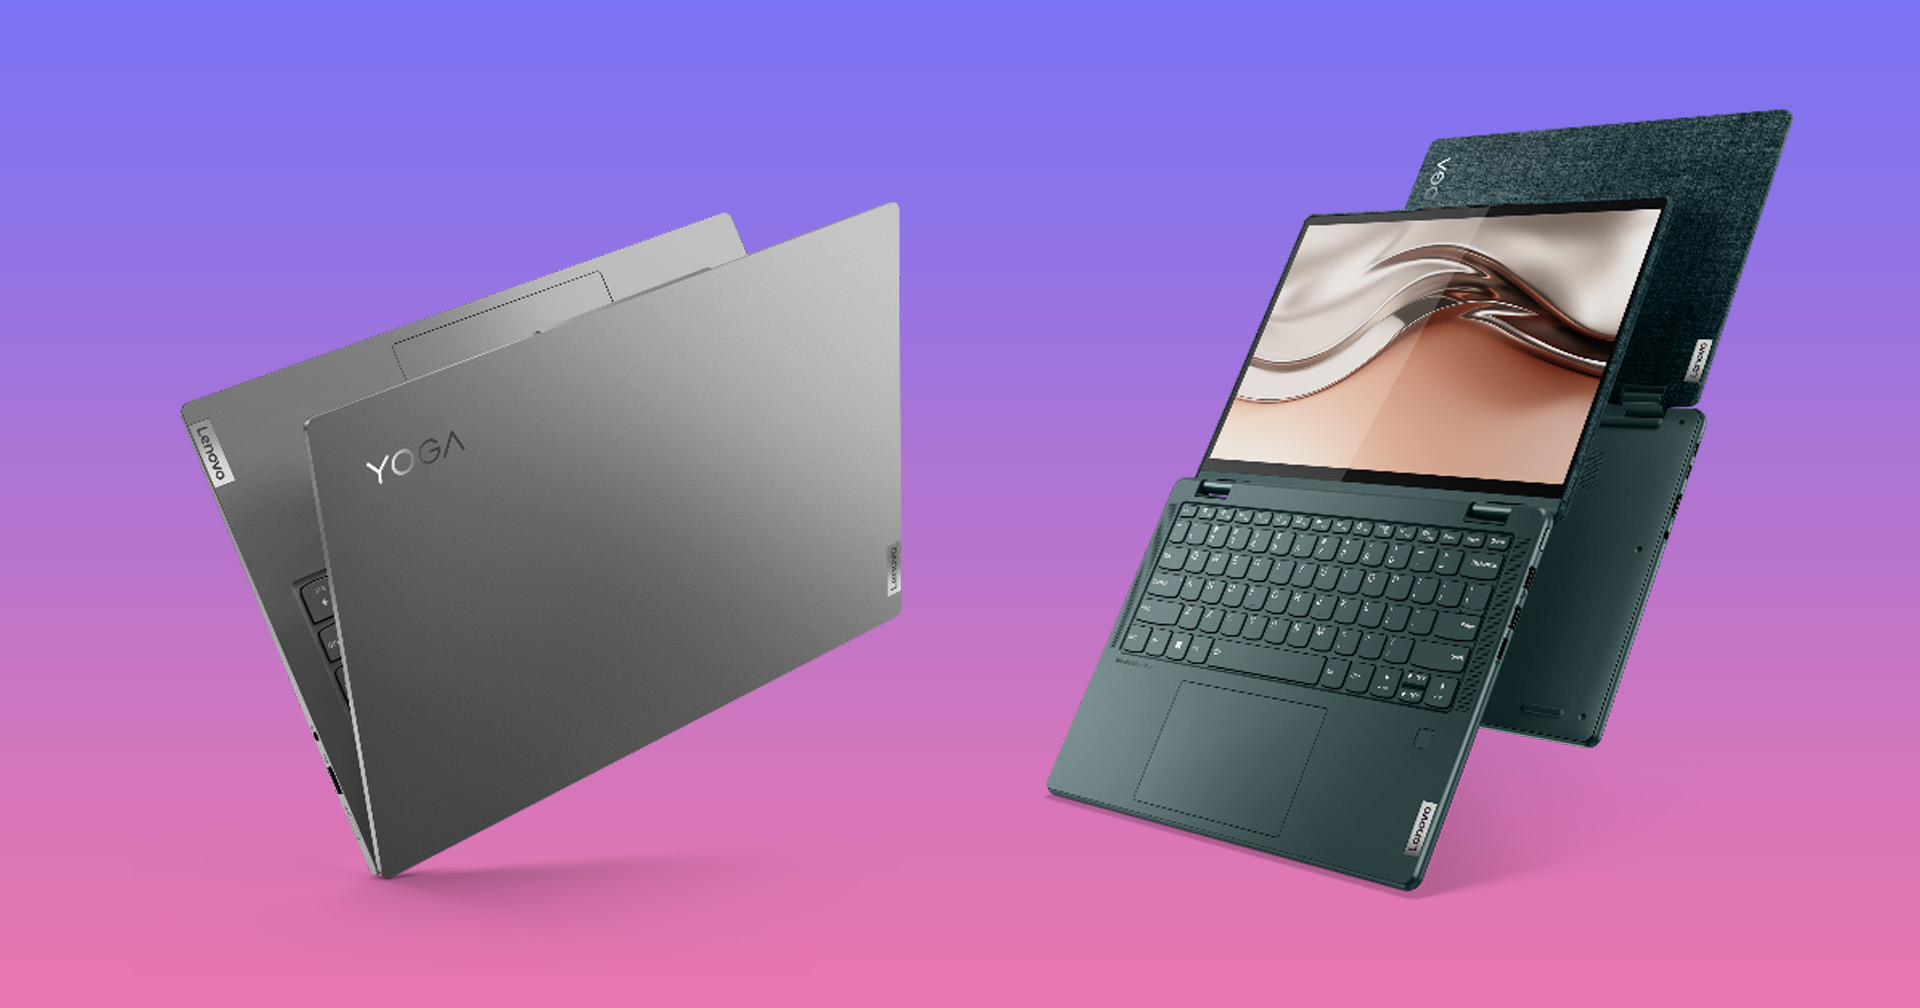 เปิดตัว  Lenovo Yoga  ผลิตภัณฑ์พรีเมี่ยมแล็ปท็อป ที่มาพร้อม  Windows 11  และเทคโนโลยีล้ำสมัย